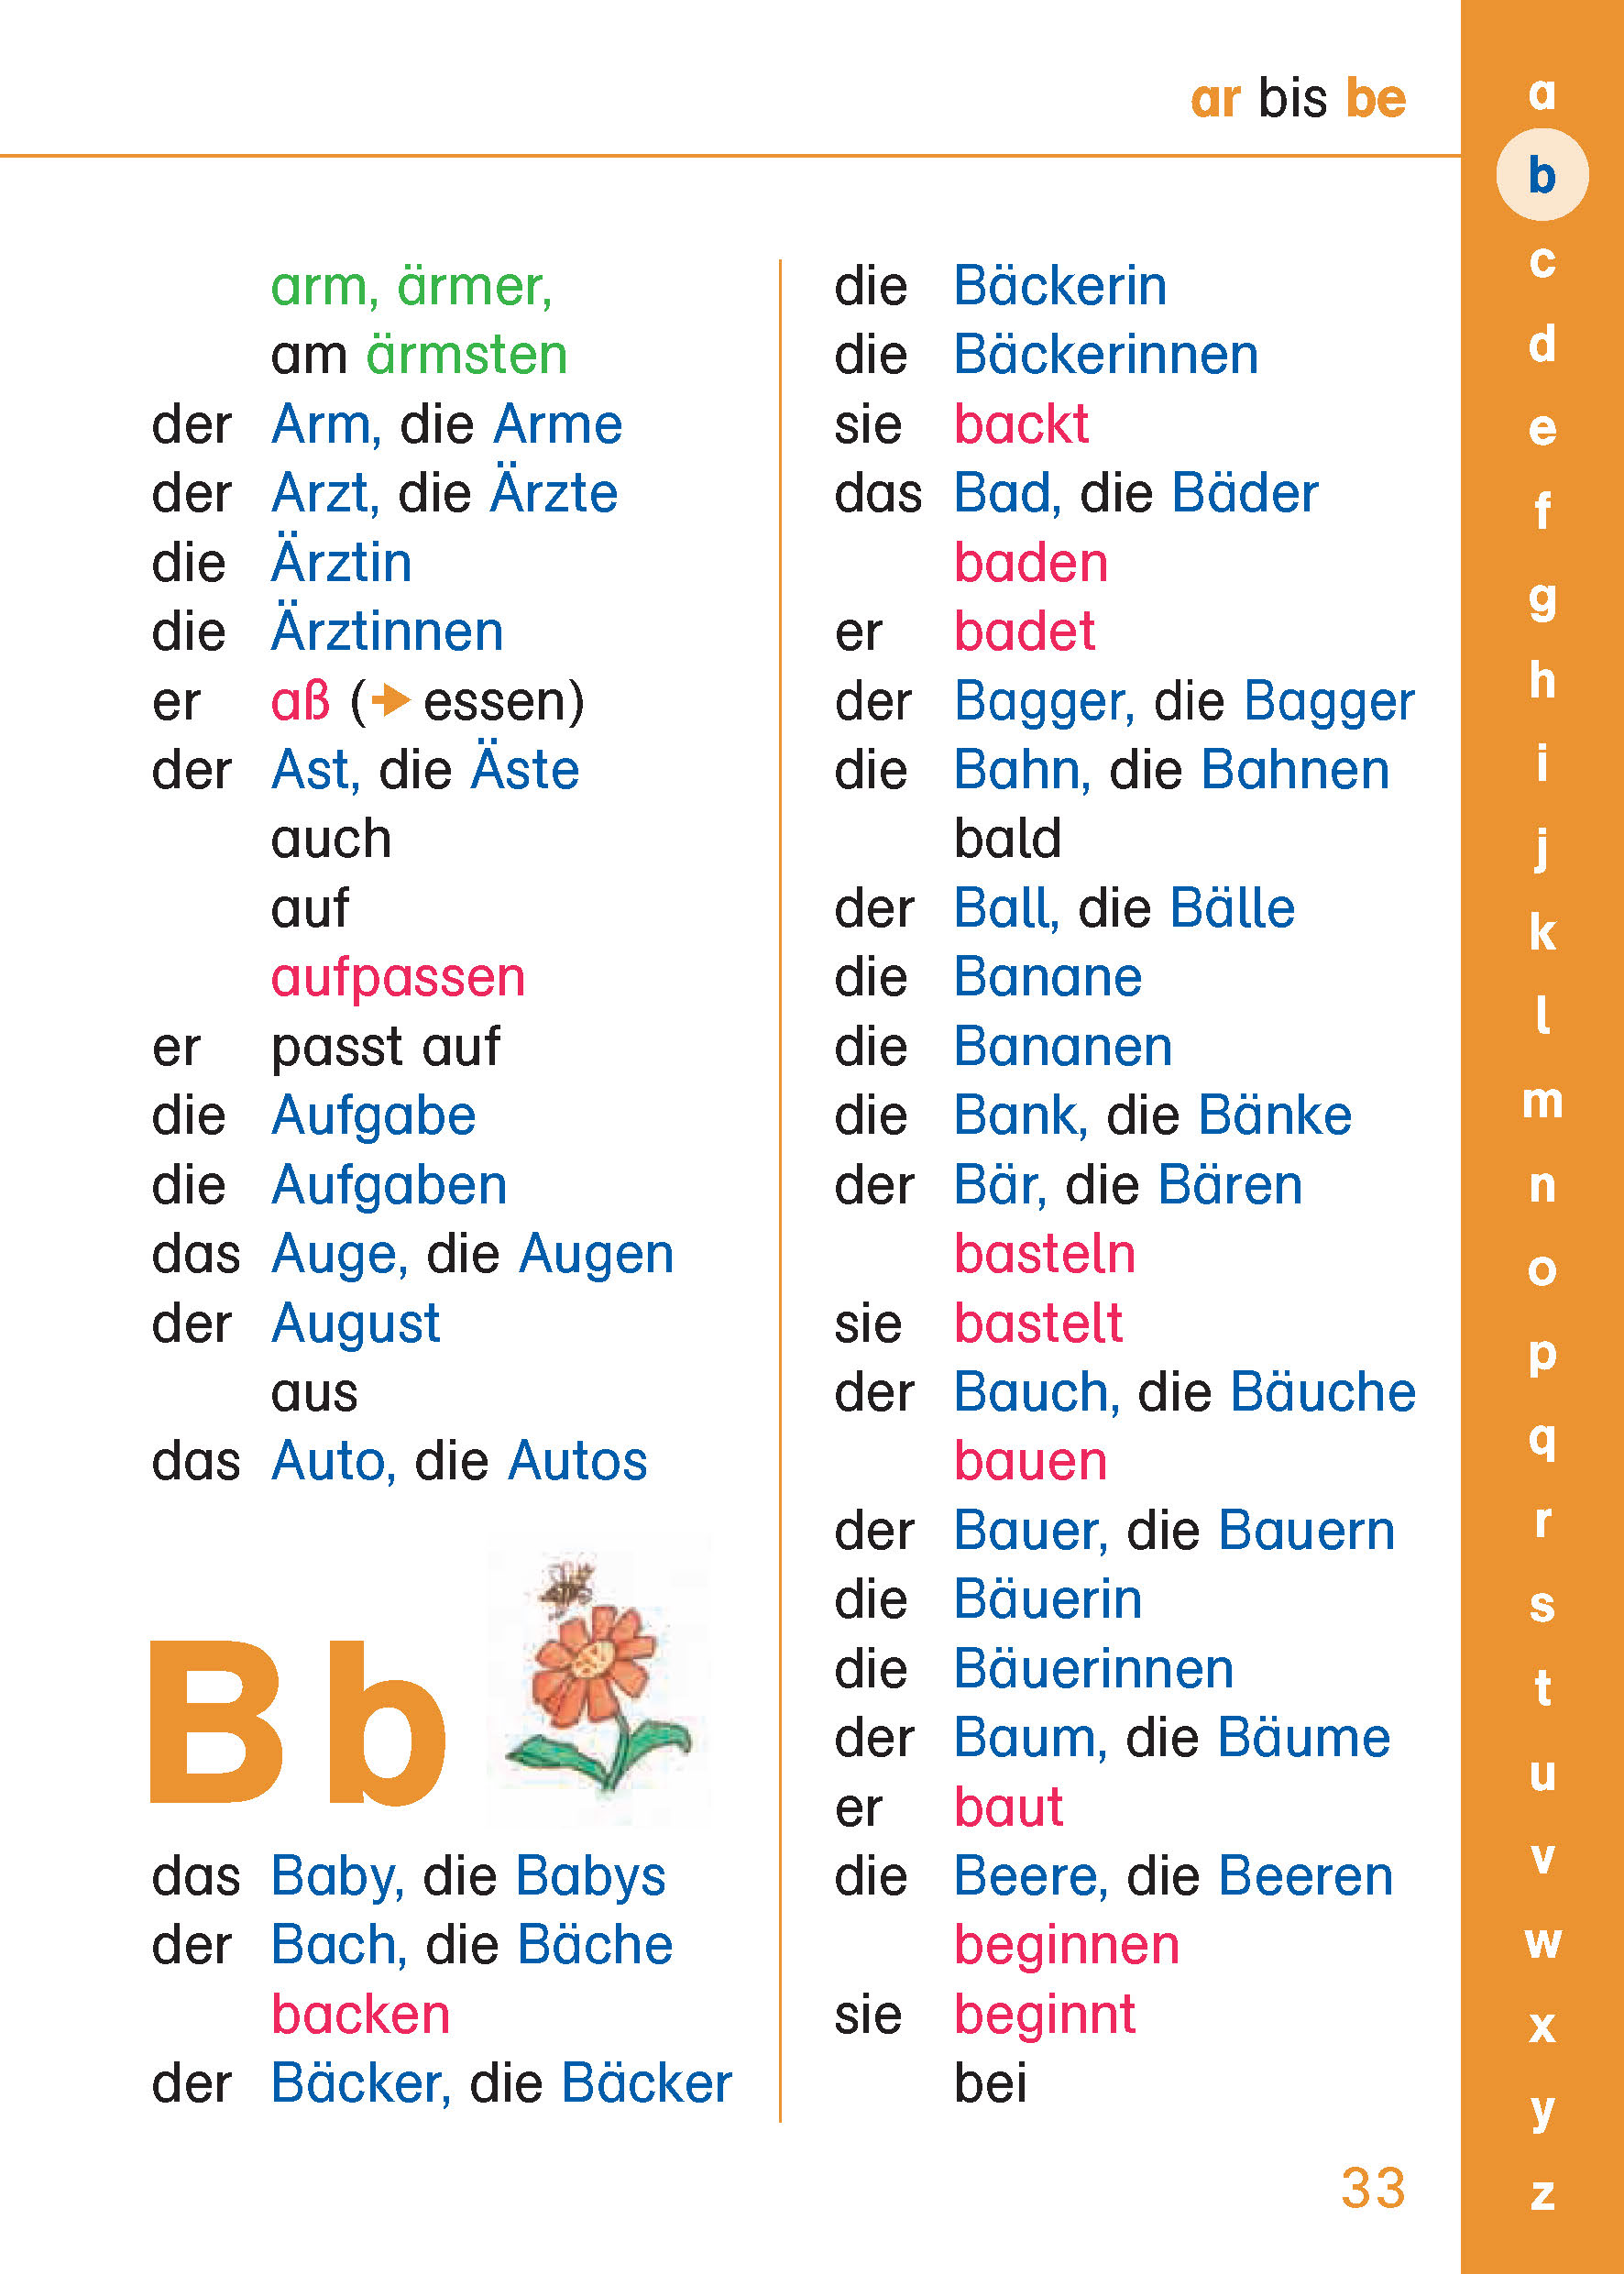 PONS Grundschulwörterbuch Deutsch